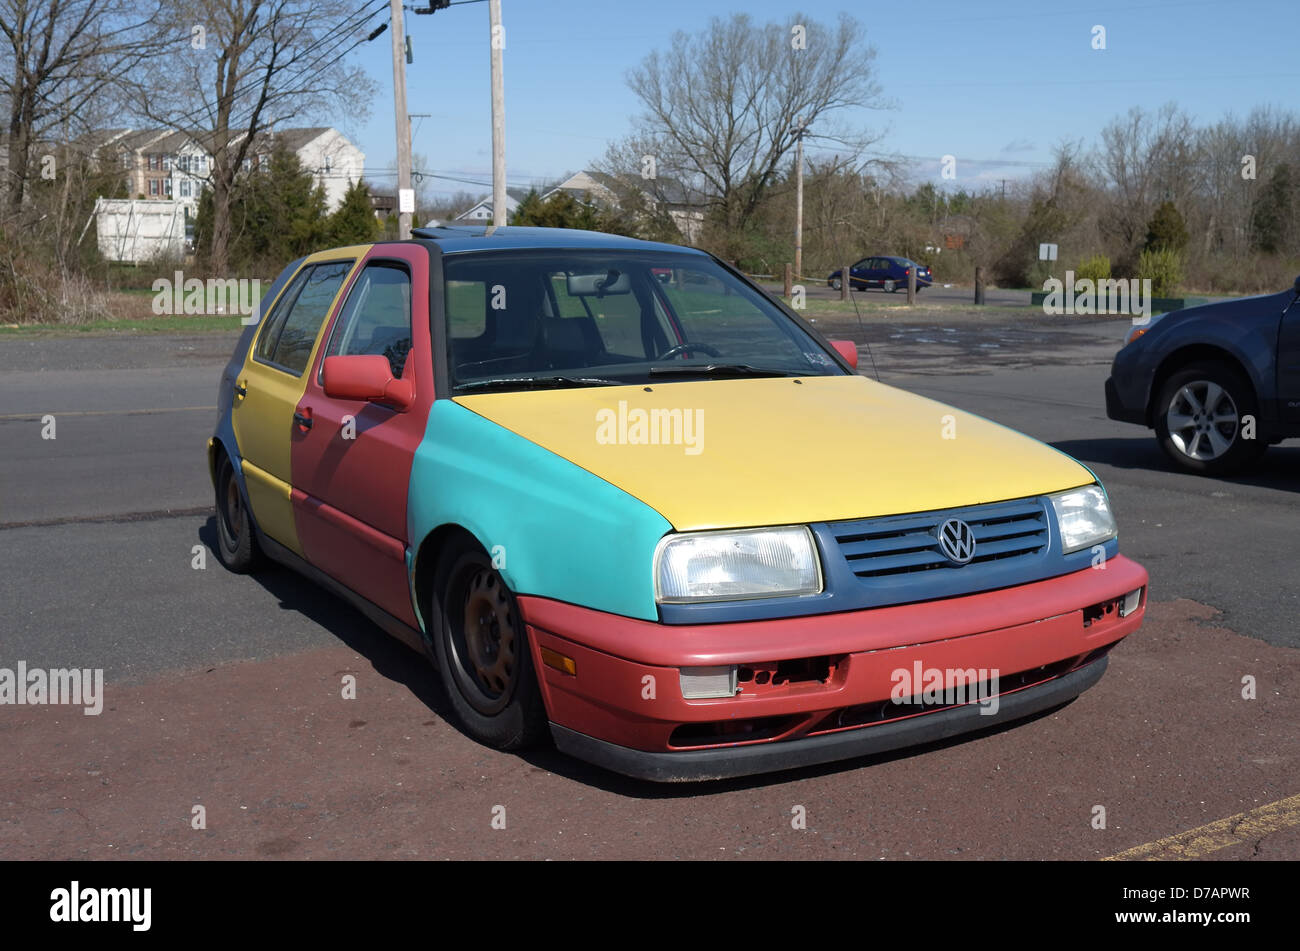 multi-color car Stock Photo